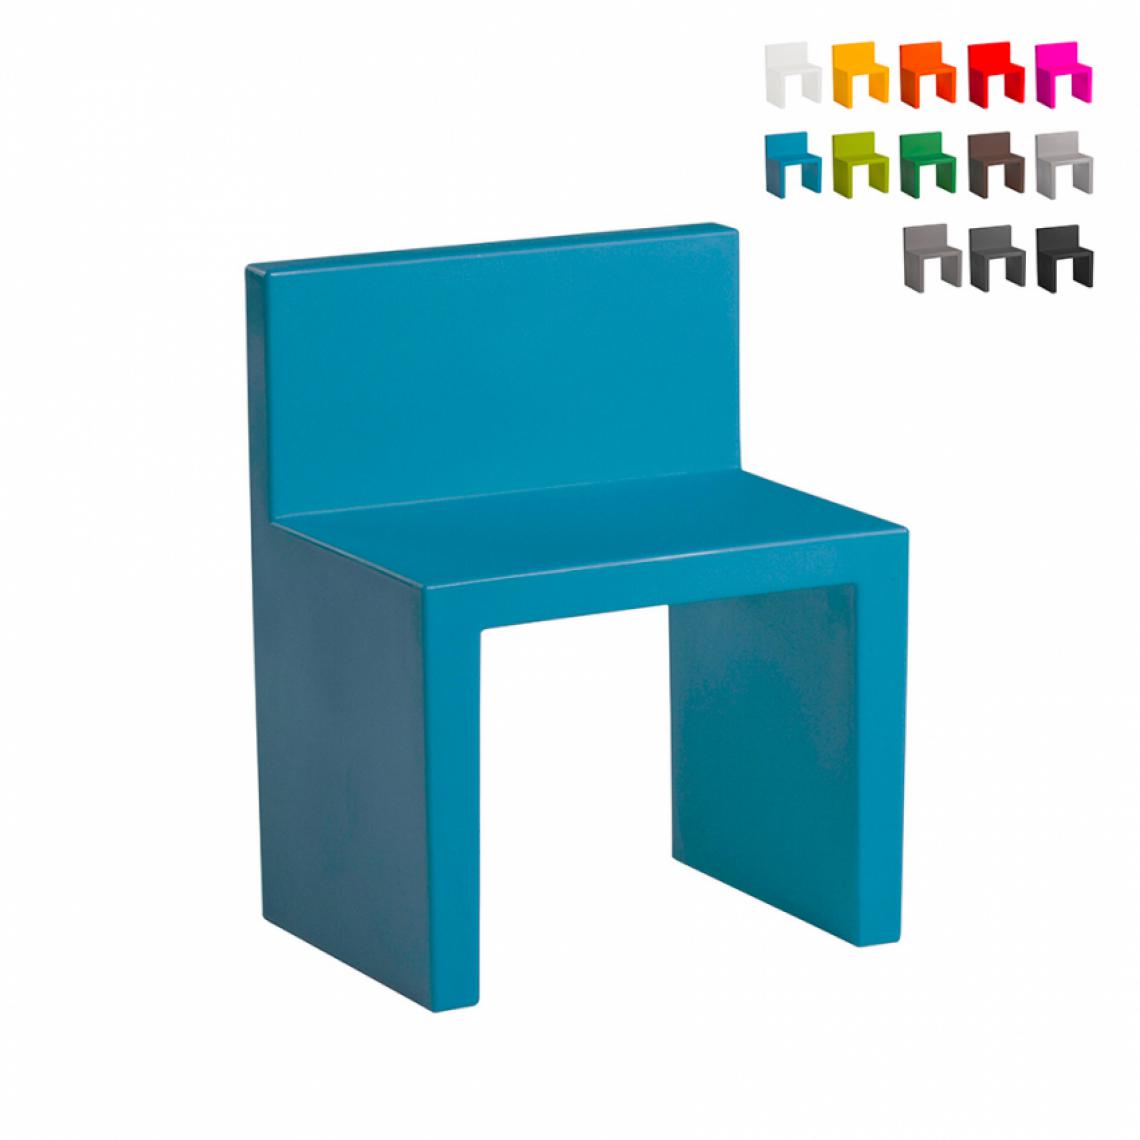 Slide - Chaise au design moderne Slide Angolo Retto pour la maison et le jardin, Couleur: Bleu - Chaises